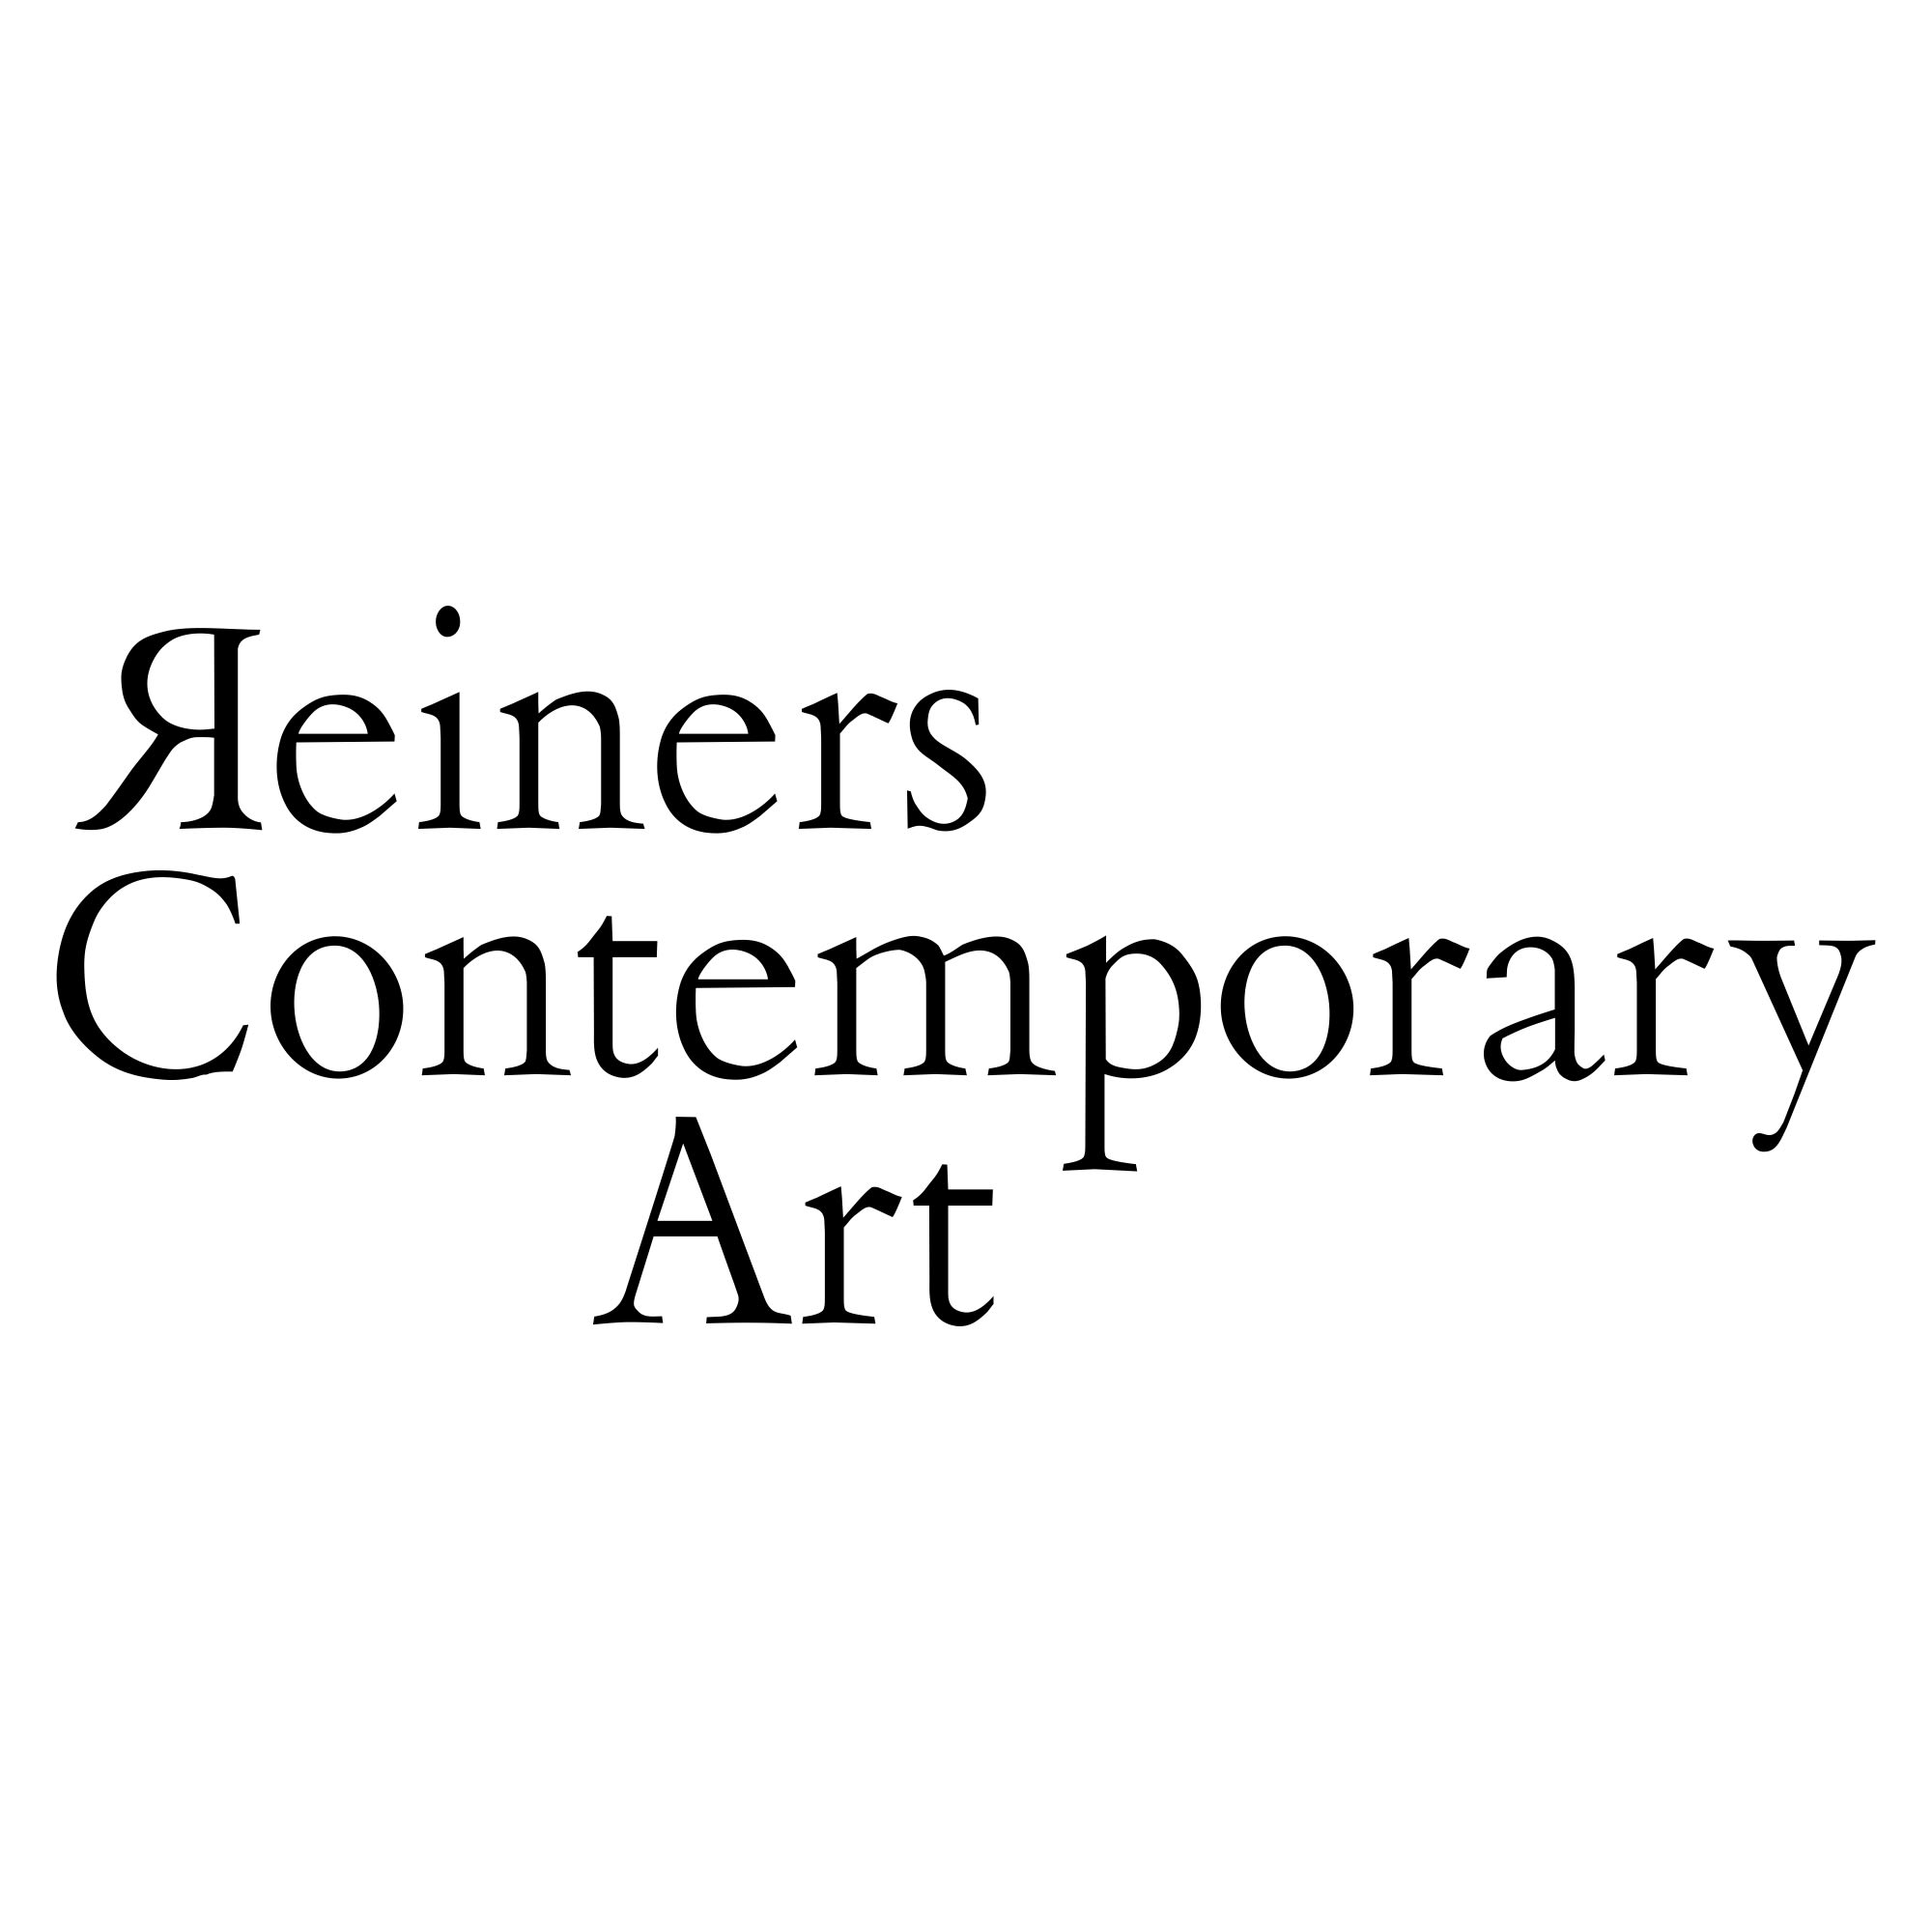 Reiners Contemporary Art company logo